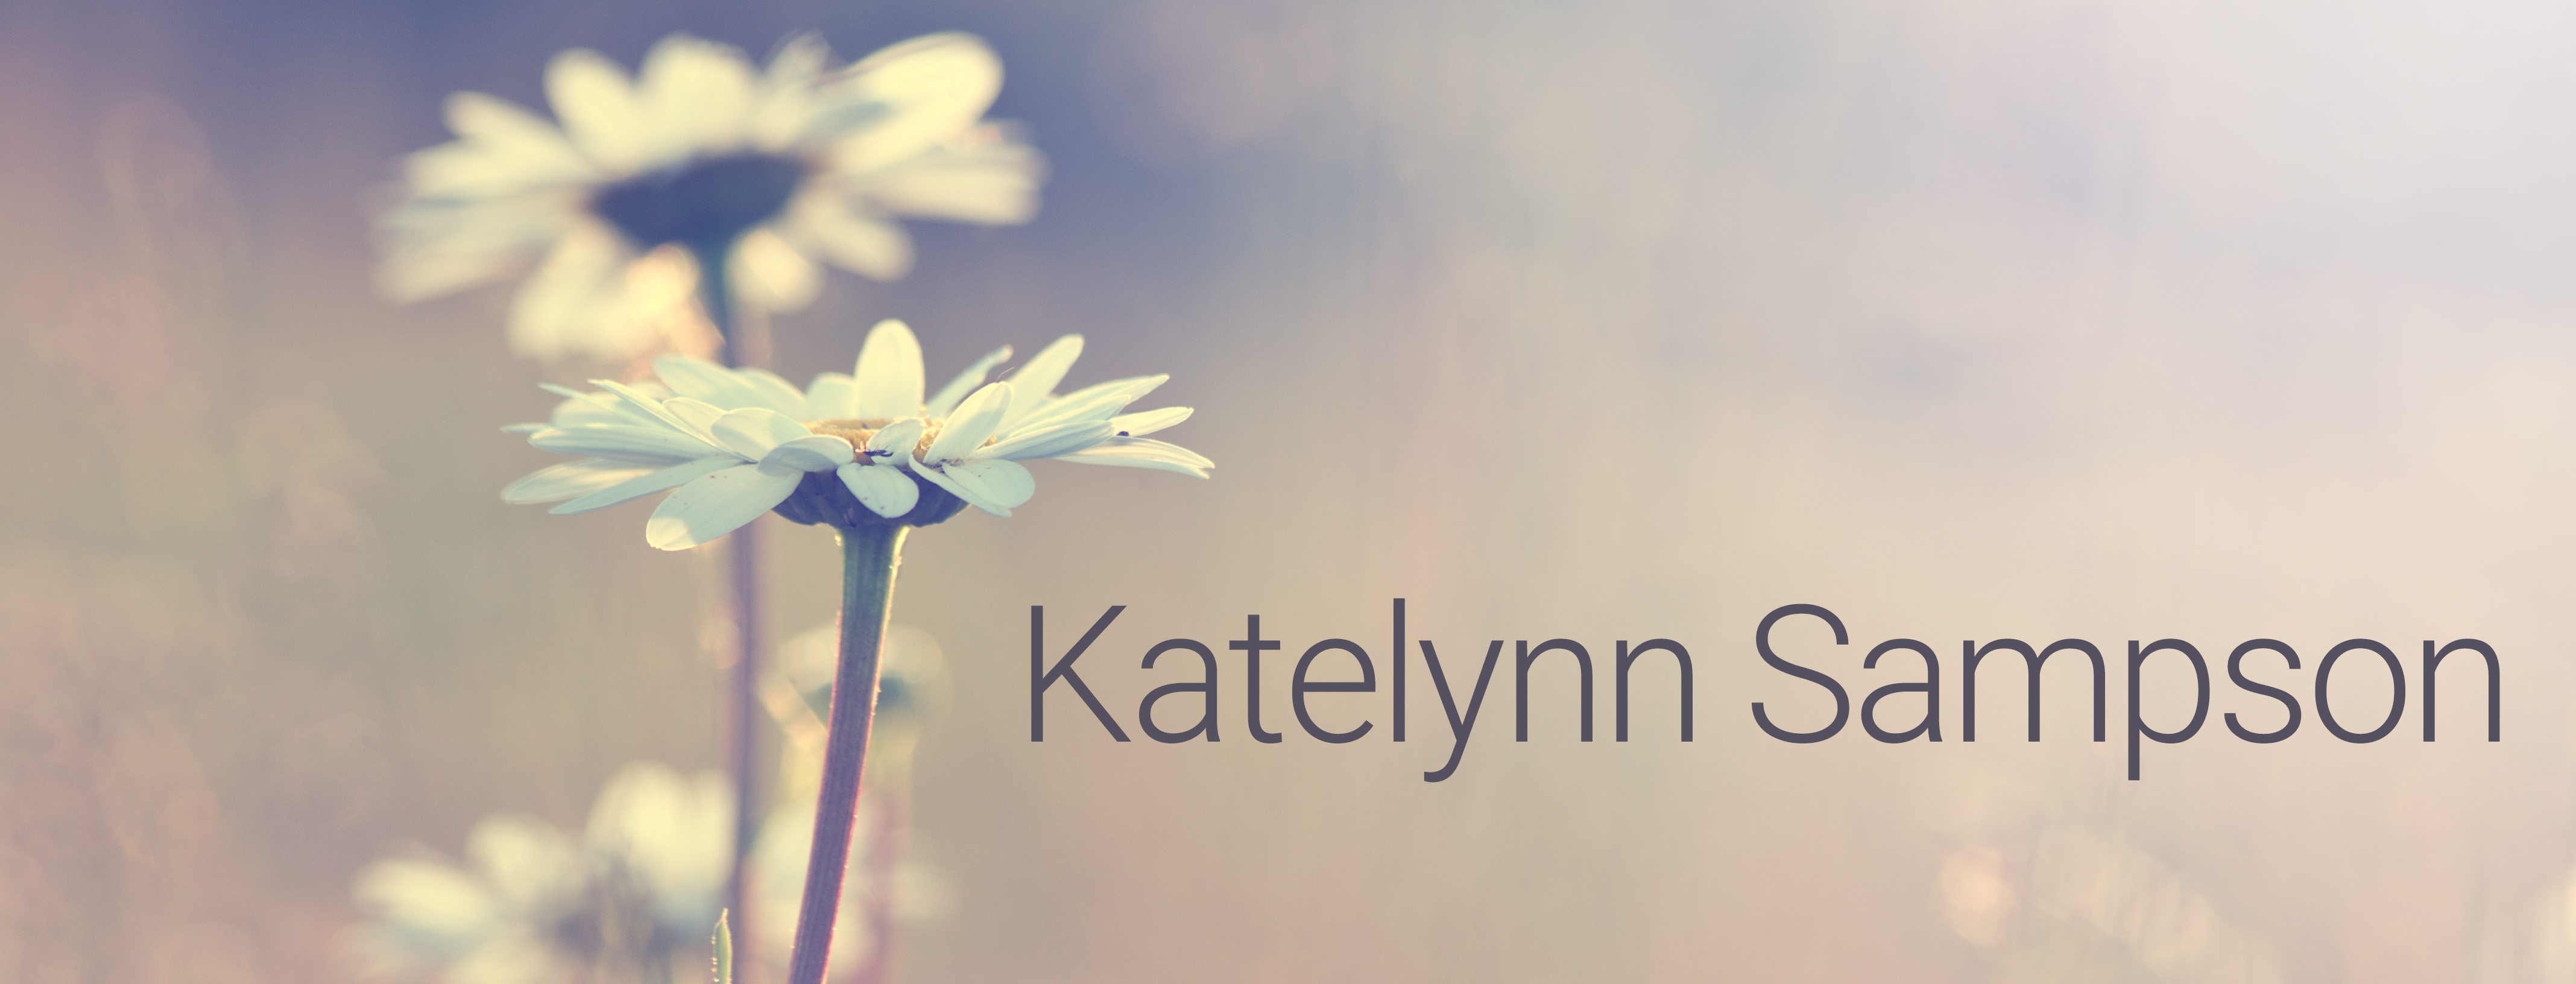 Katelynn Sampson website statement banner